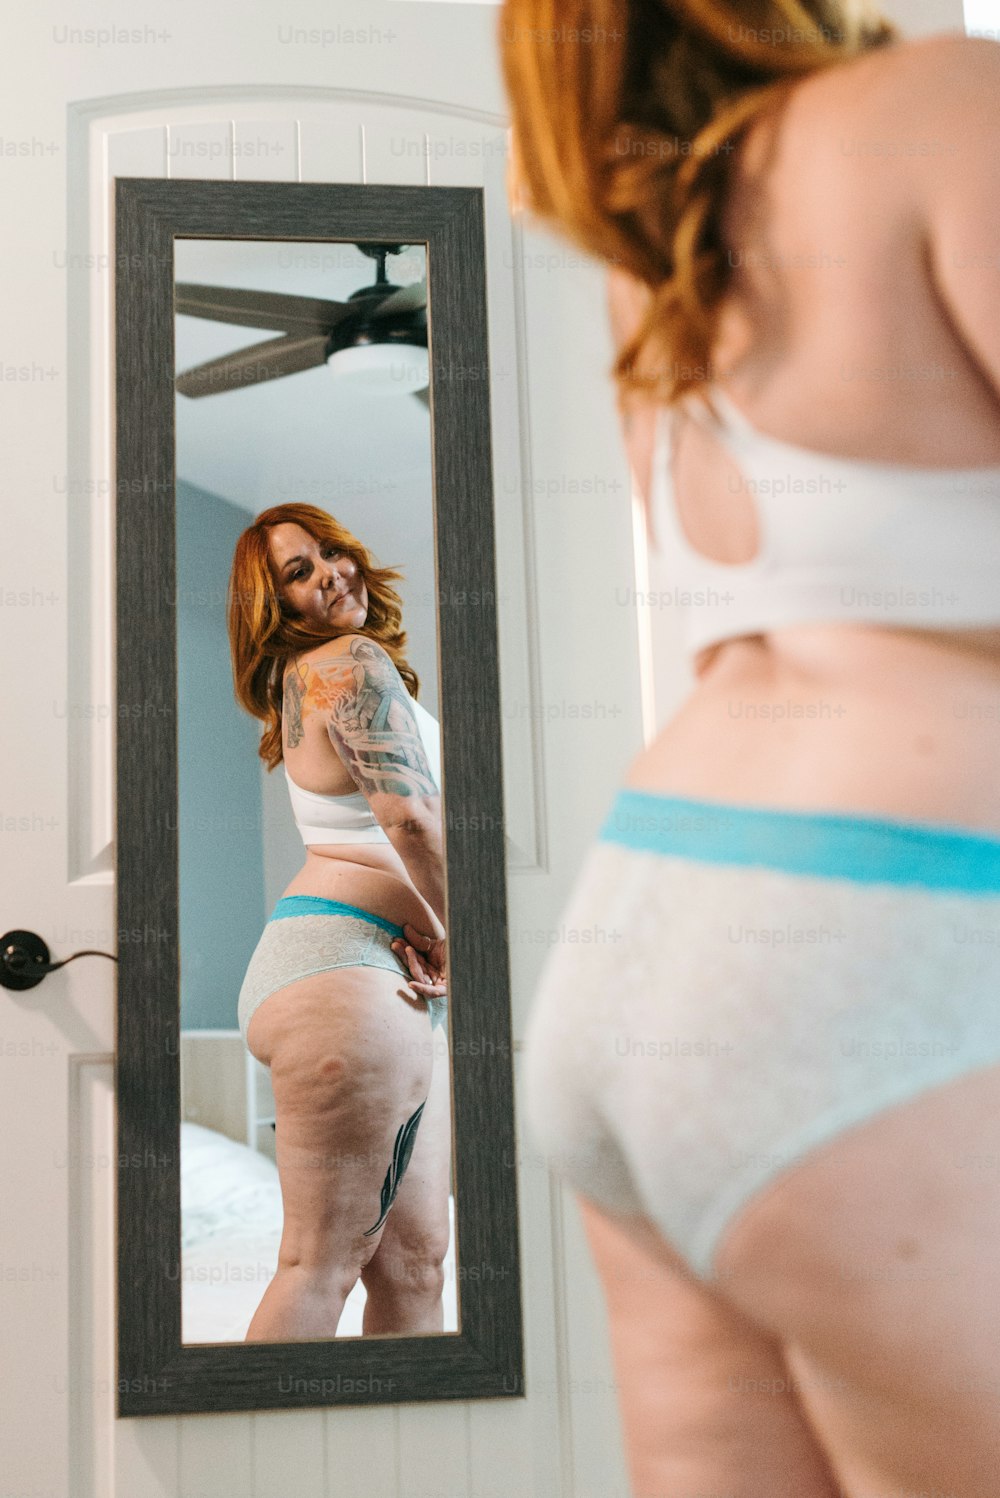 Une femme en sous-vêtements se regardant dans un miroir